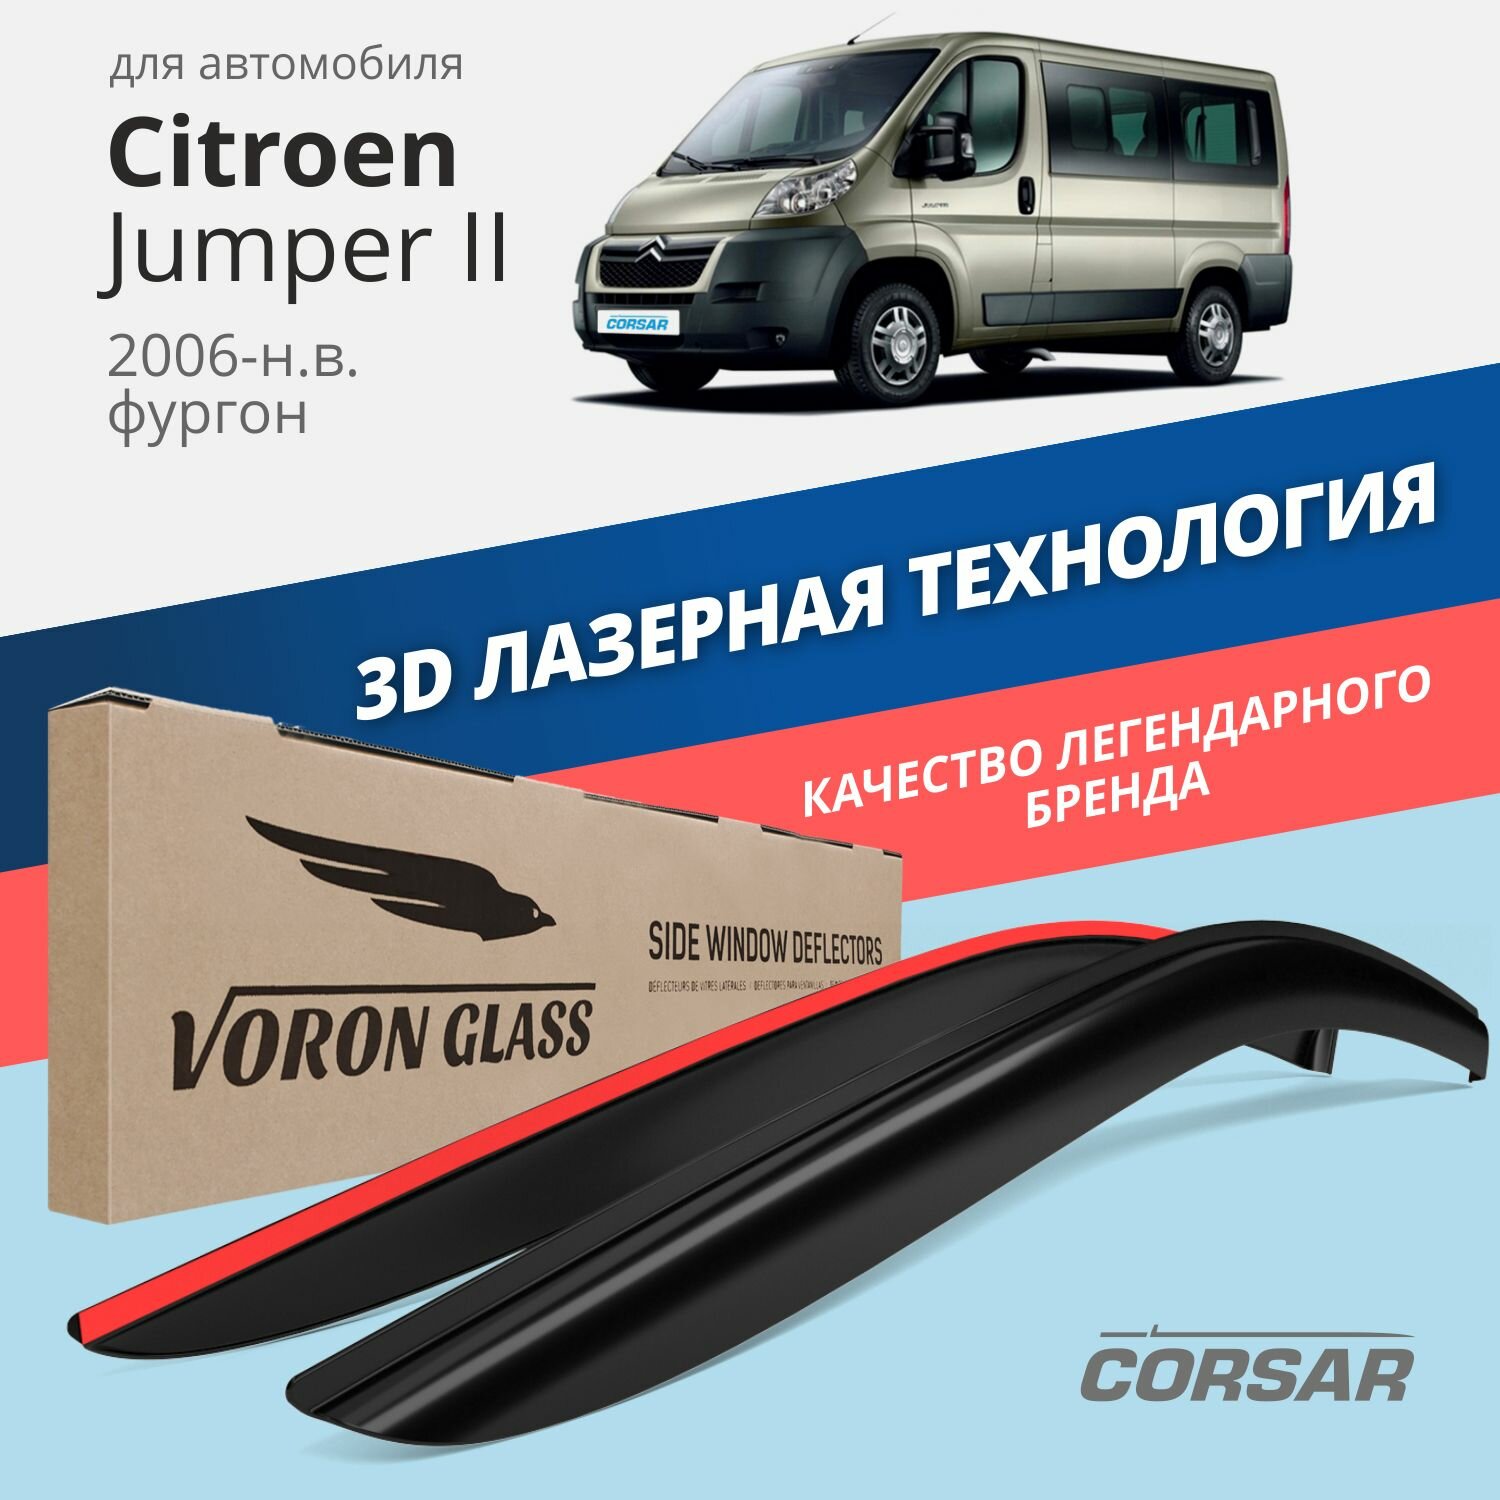 Дефлекторы на окна Voron Glass CORSAR Citroen JUMPER II 2006-2015, комплект 2шт, - фото №1